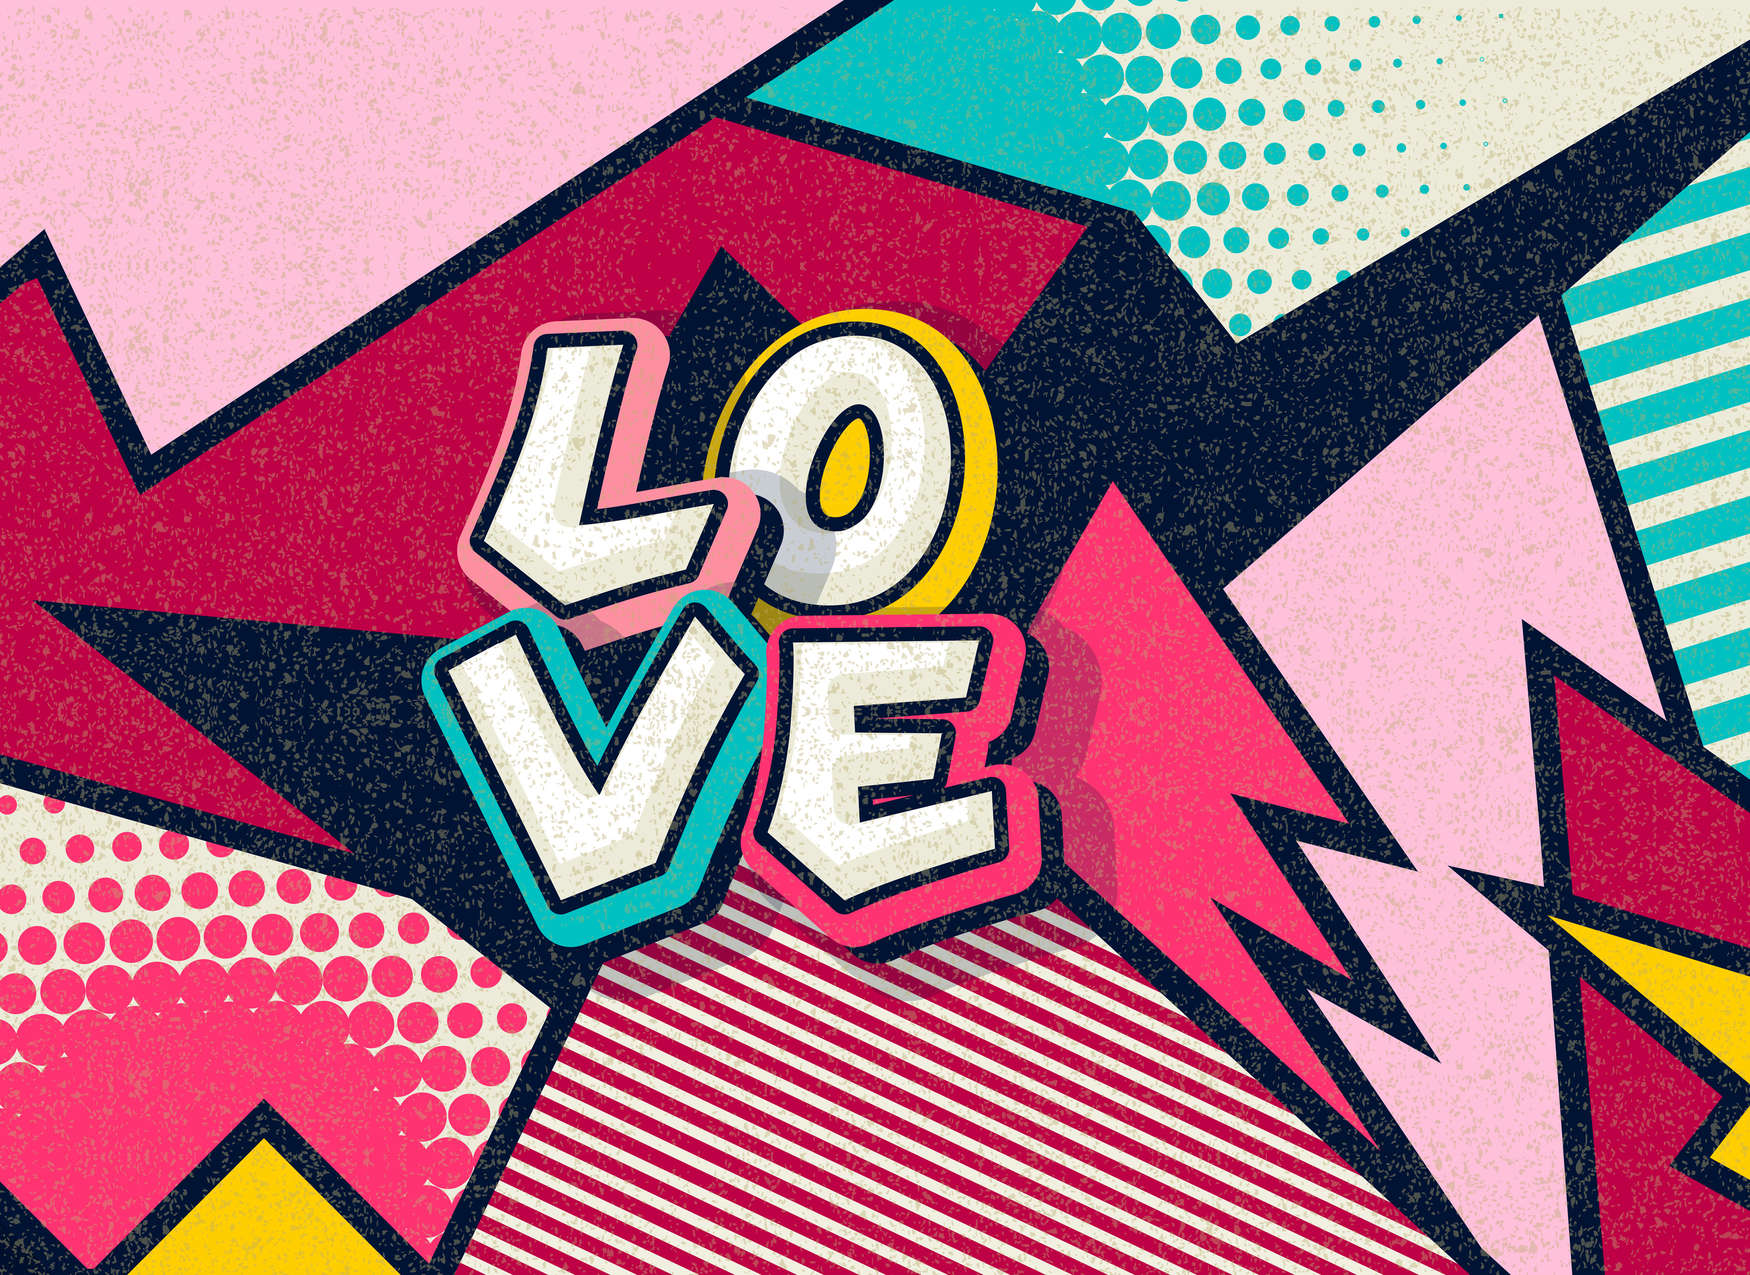             Carta da parati Pop Up Love in stile fumetto - Colorata
        